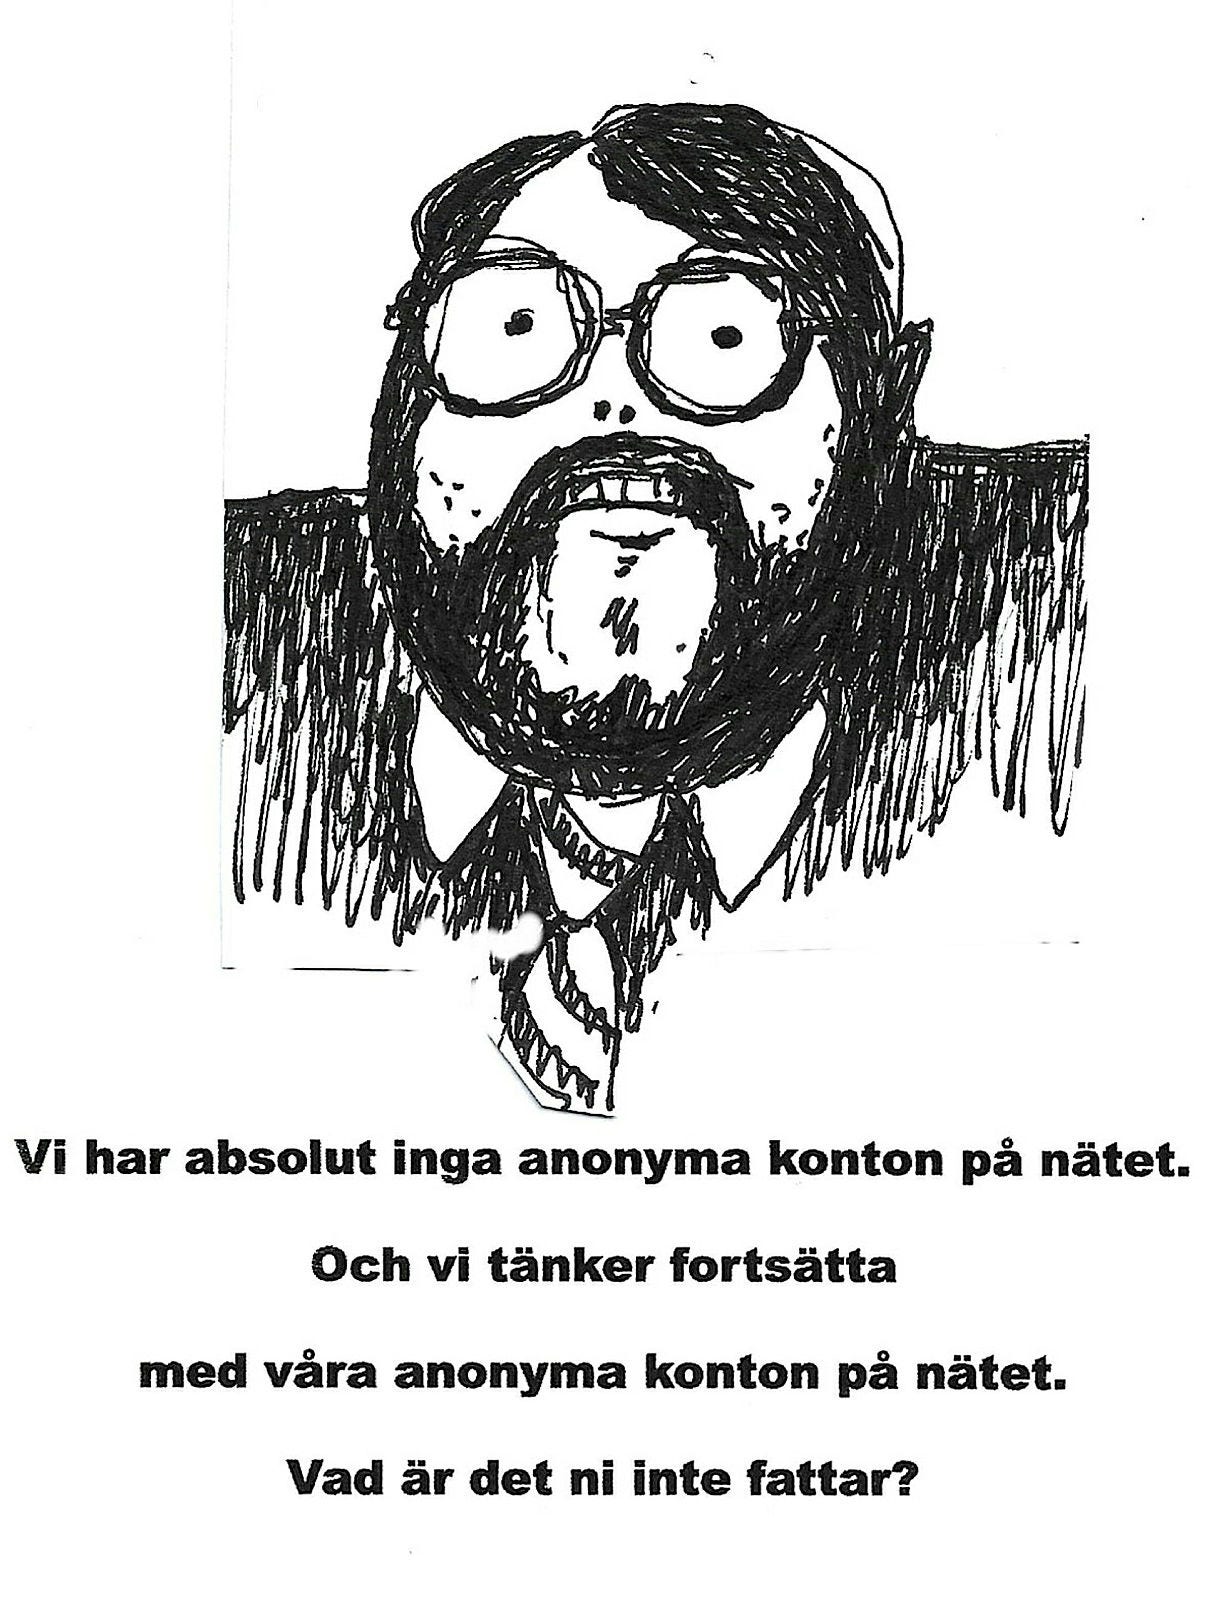 Bildinsändare av Björn Samuelsson, Ölands Skogsby.